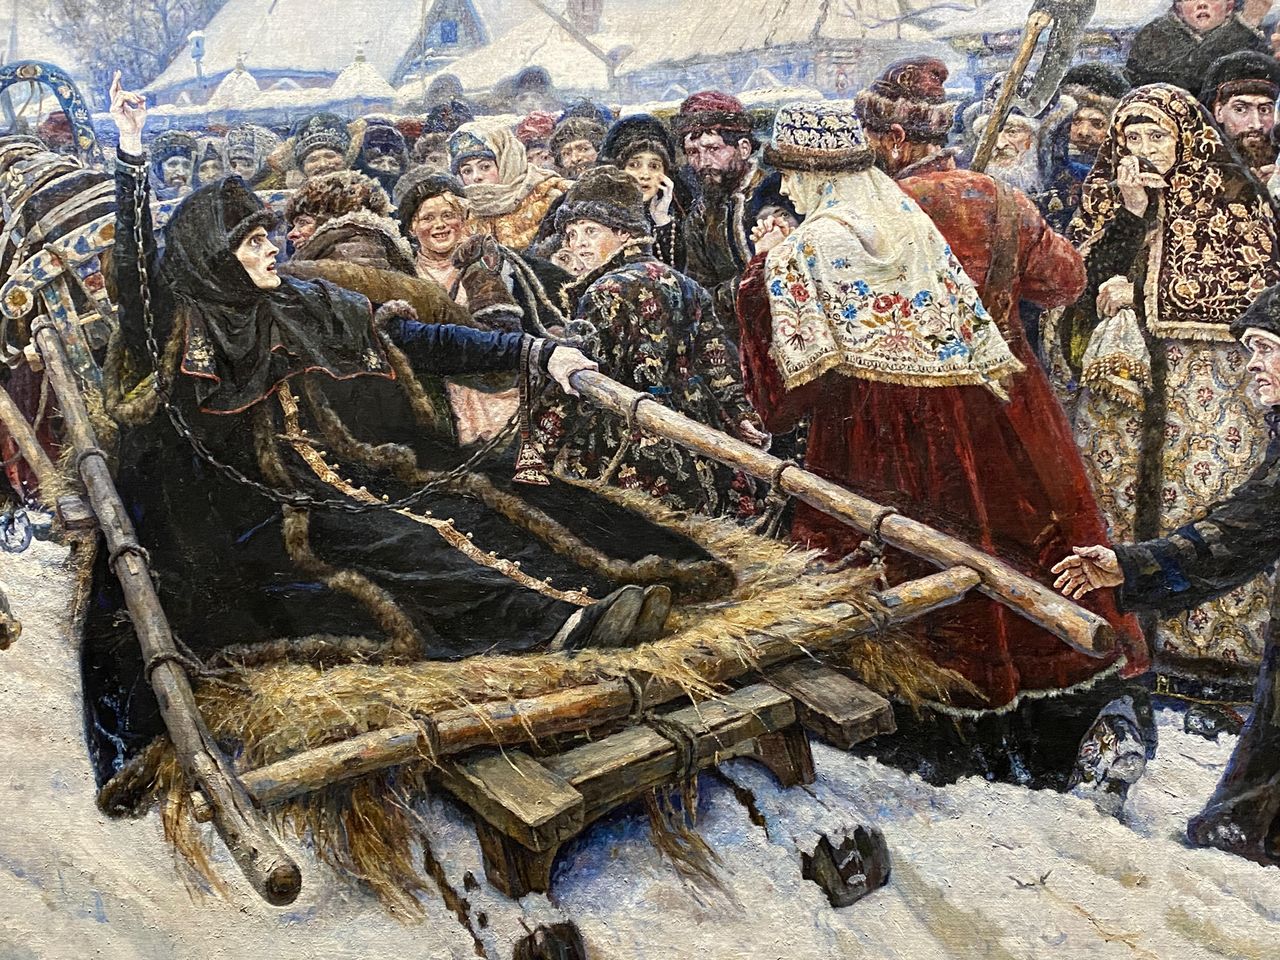 Выставка картин Василия Сурикова в Русском музее | Цена 6500₽, отзывы, описание экскурсии